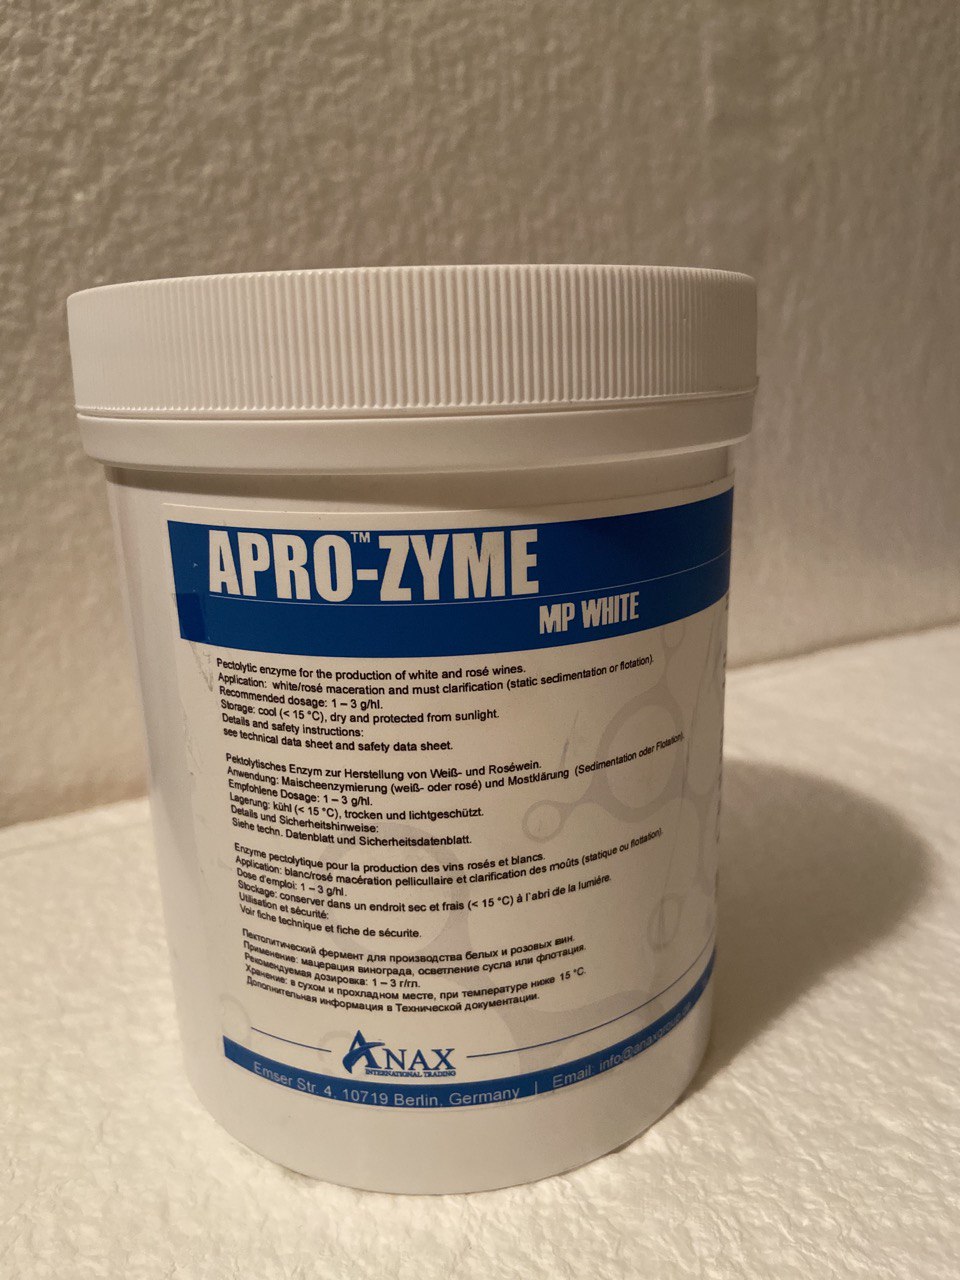 Фермент APRO-ZYME MP WHITE ANAX